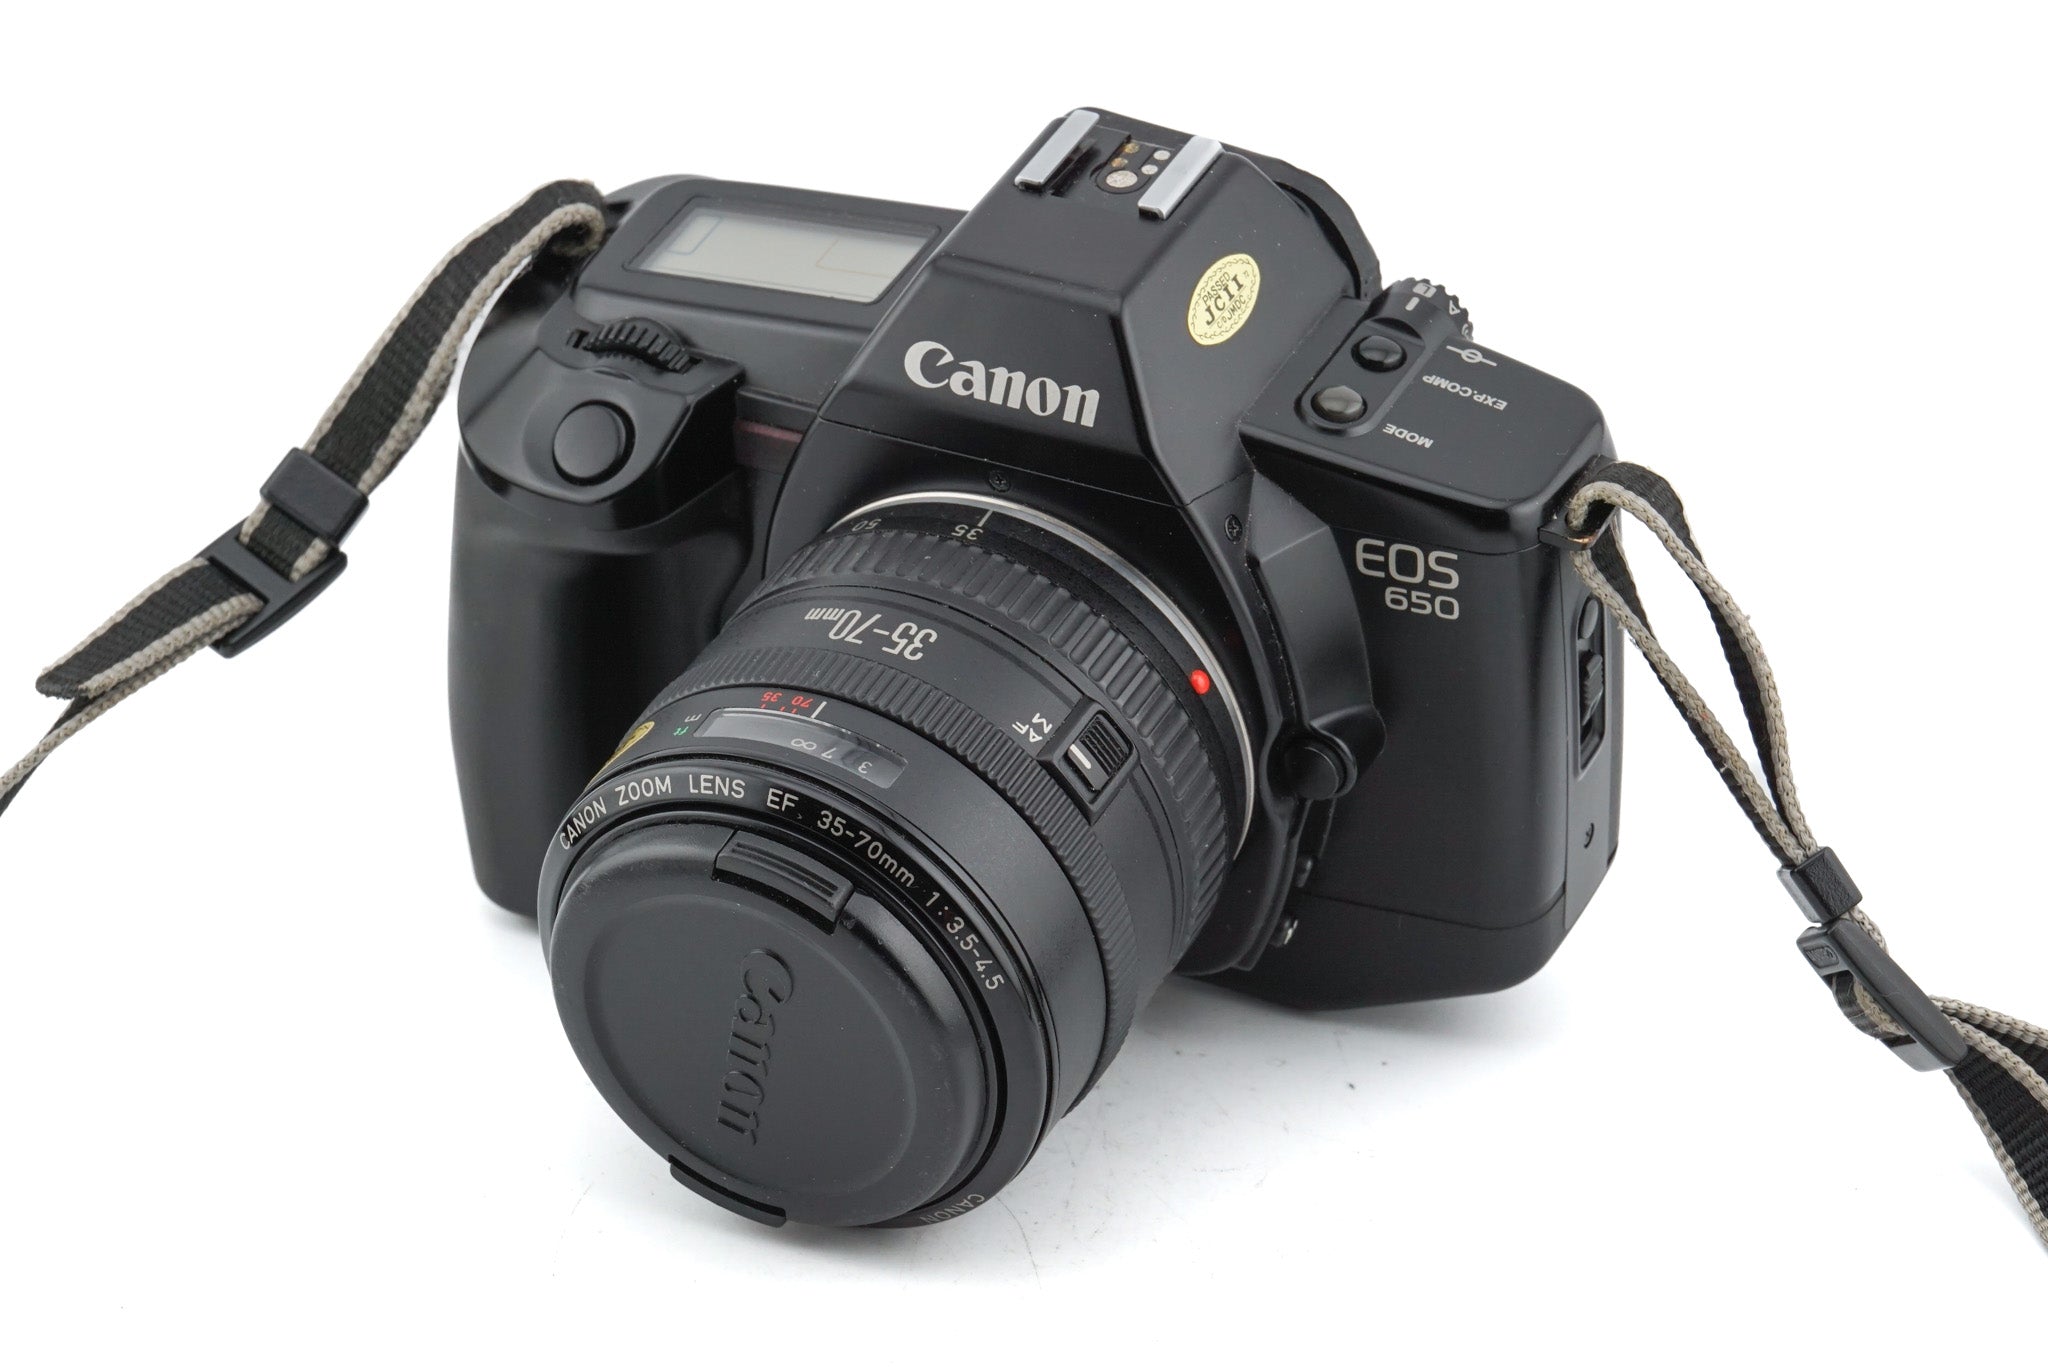 Canon EOS 650 + 35-70mm f3.5-4.5